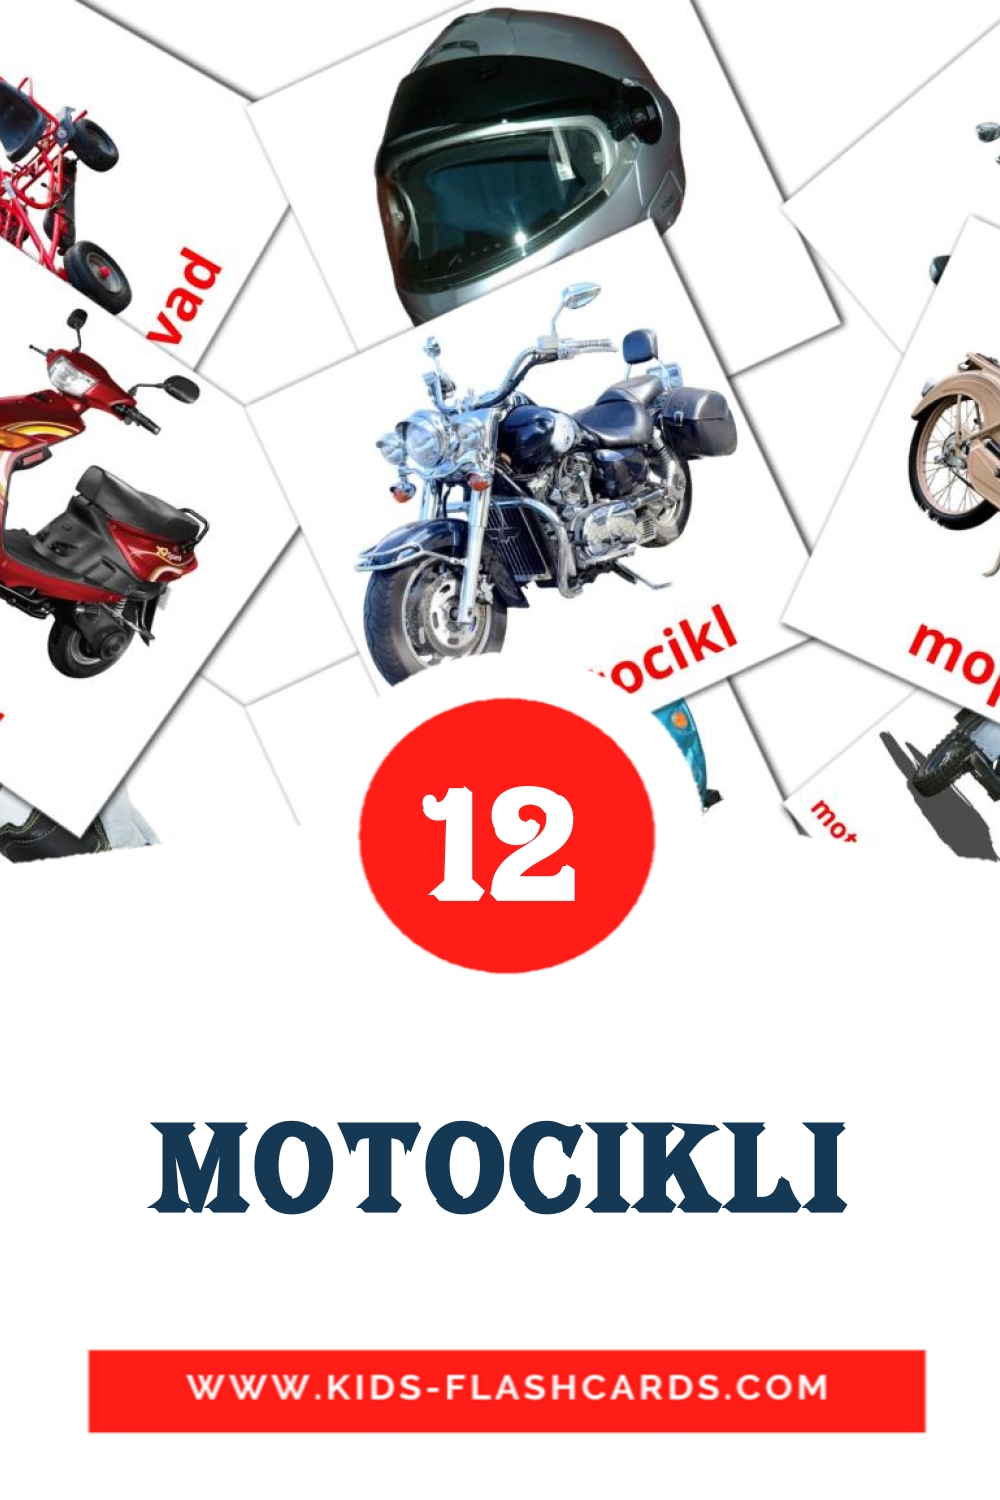 Motocikli на сербском для Детского Сада (12 карточек)